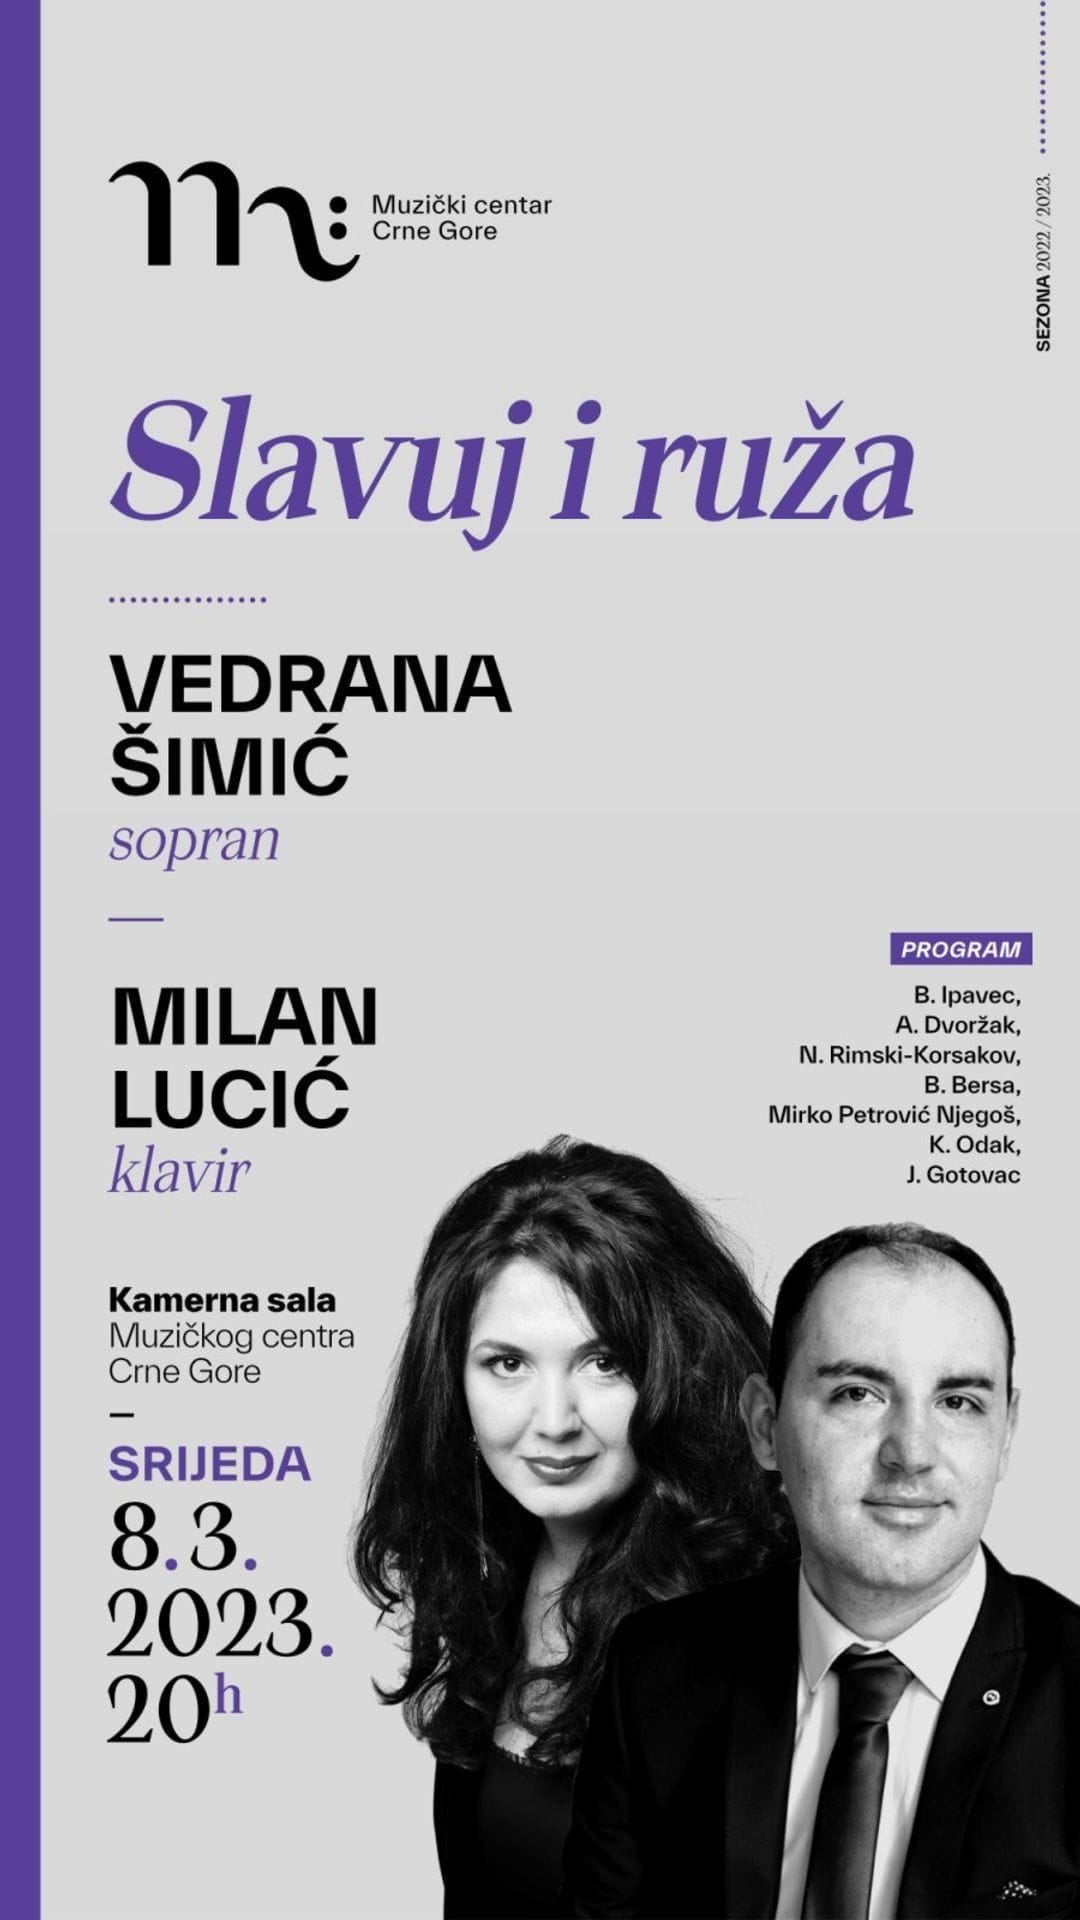 SLAVUJ I RUŽA  Vedrana Šimić, sopran Milan Lucić, klavir